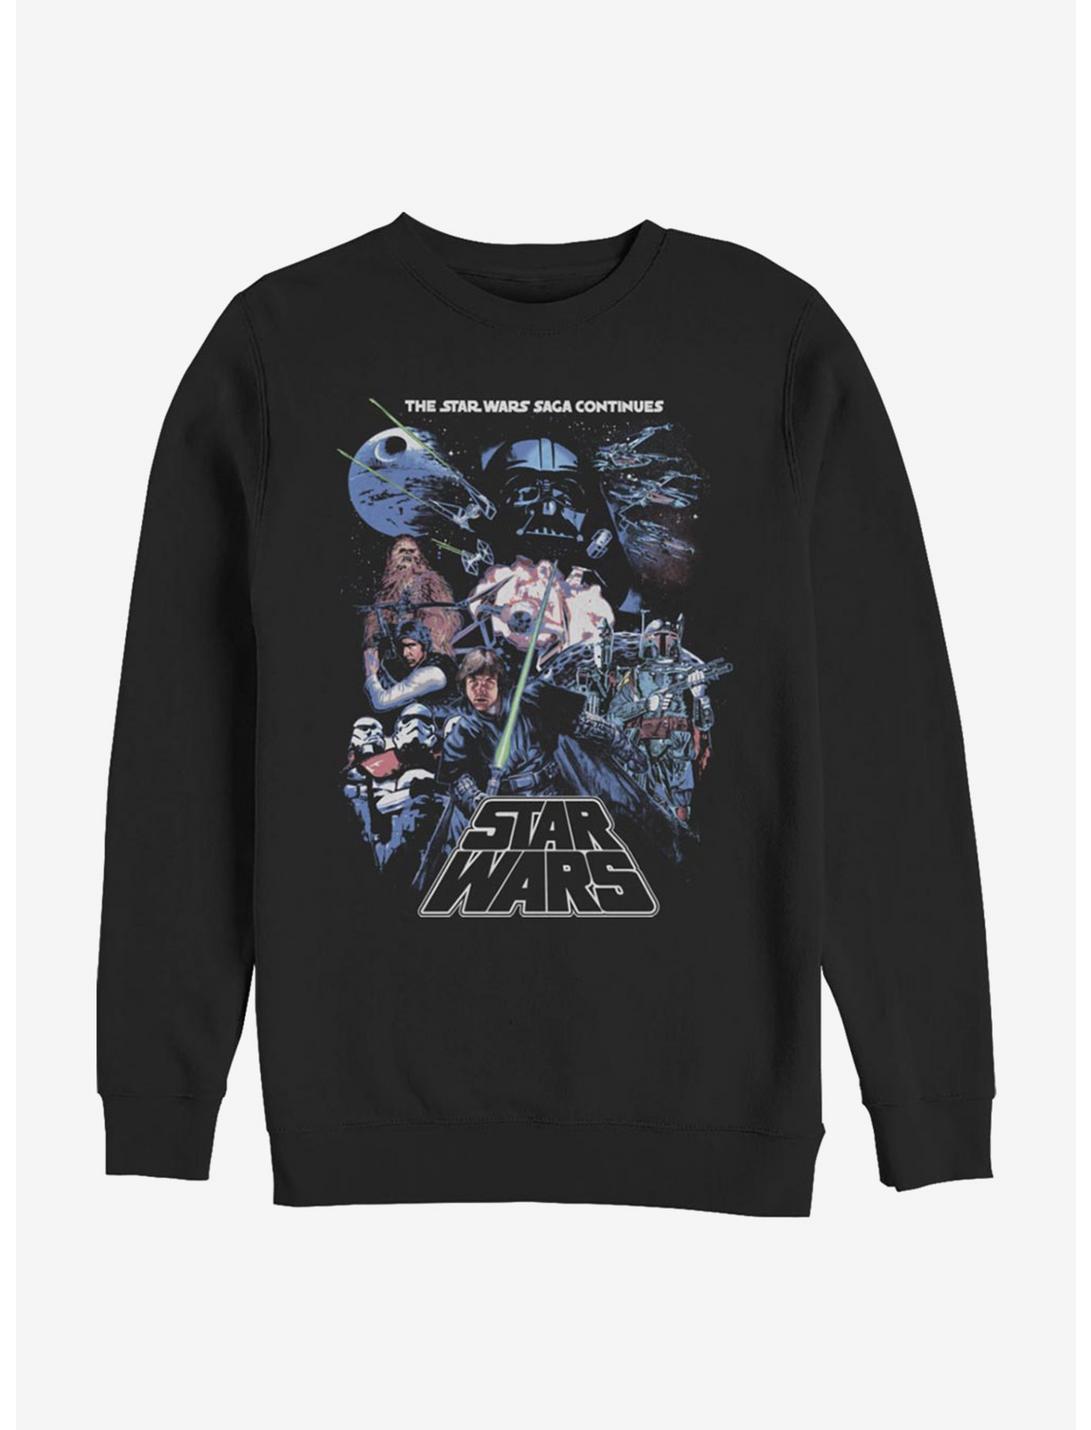 Star Wars Episode V The Empire Strikes Back Saga Group Poster Sweatshirt, BLACK, hi-res